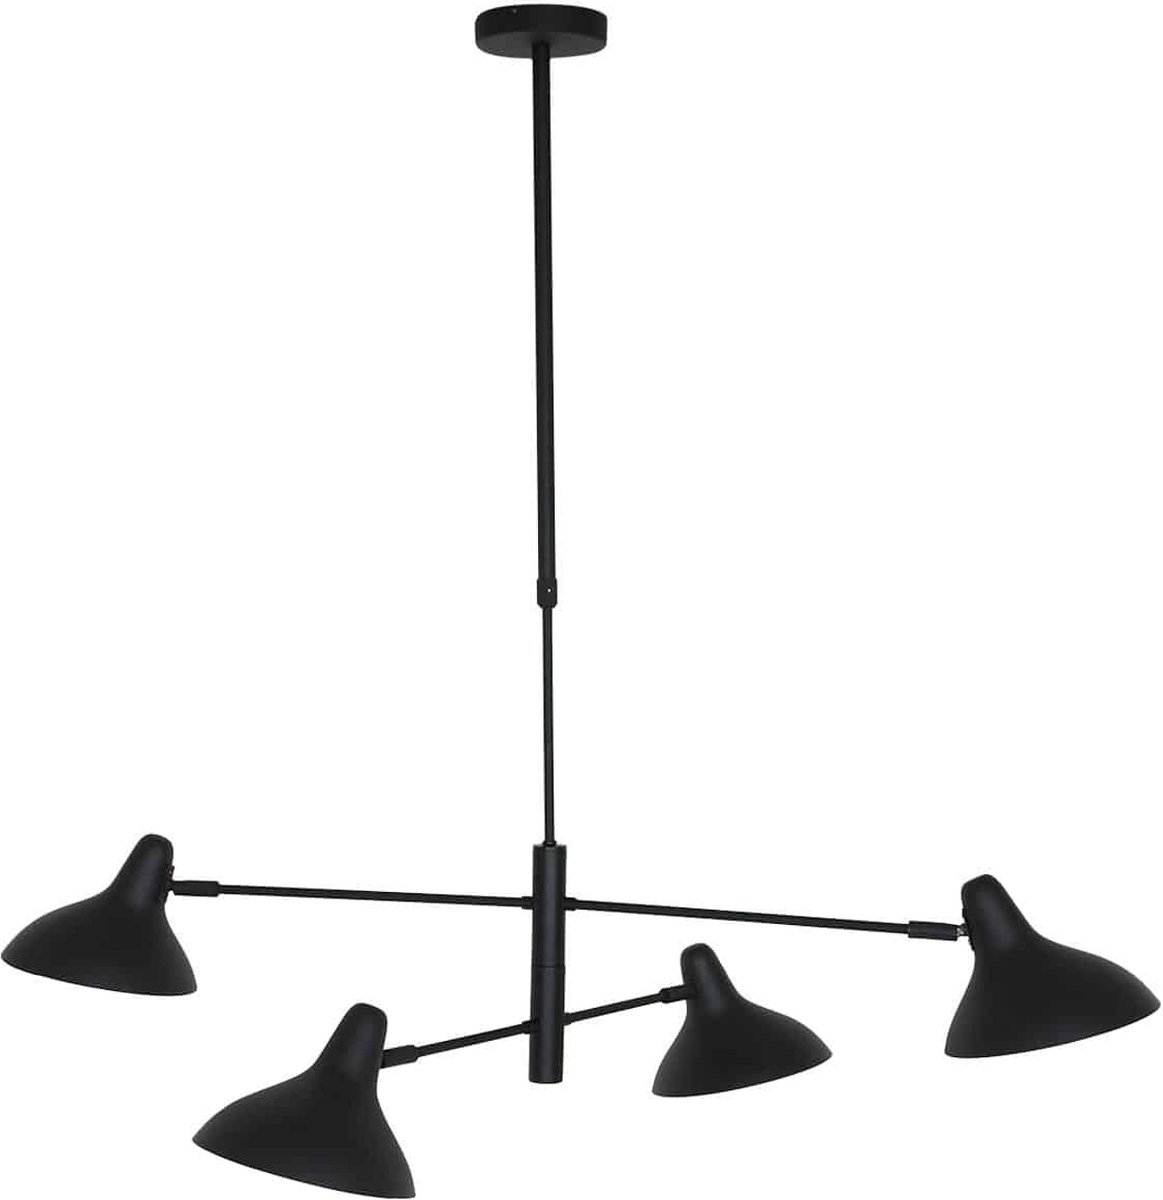 Hanglamp Anne Kasket | 4 lichts | zwart | metaal | in hoogte verstelbaar tot 100 cm | 100 cm breed | eetkamer / eettafel lamp | modern / sfeervol design